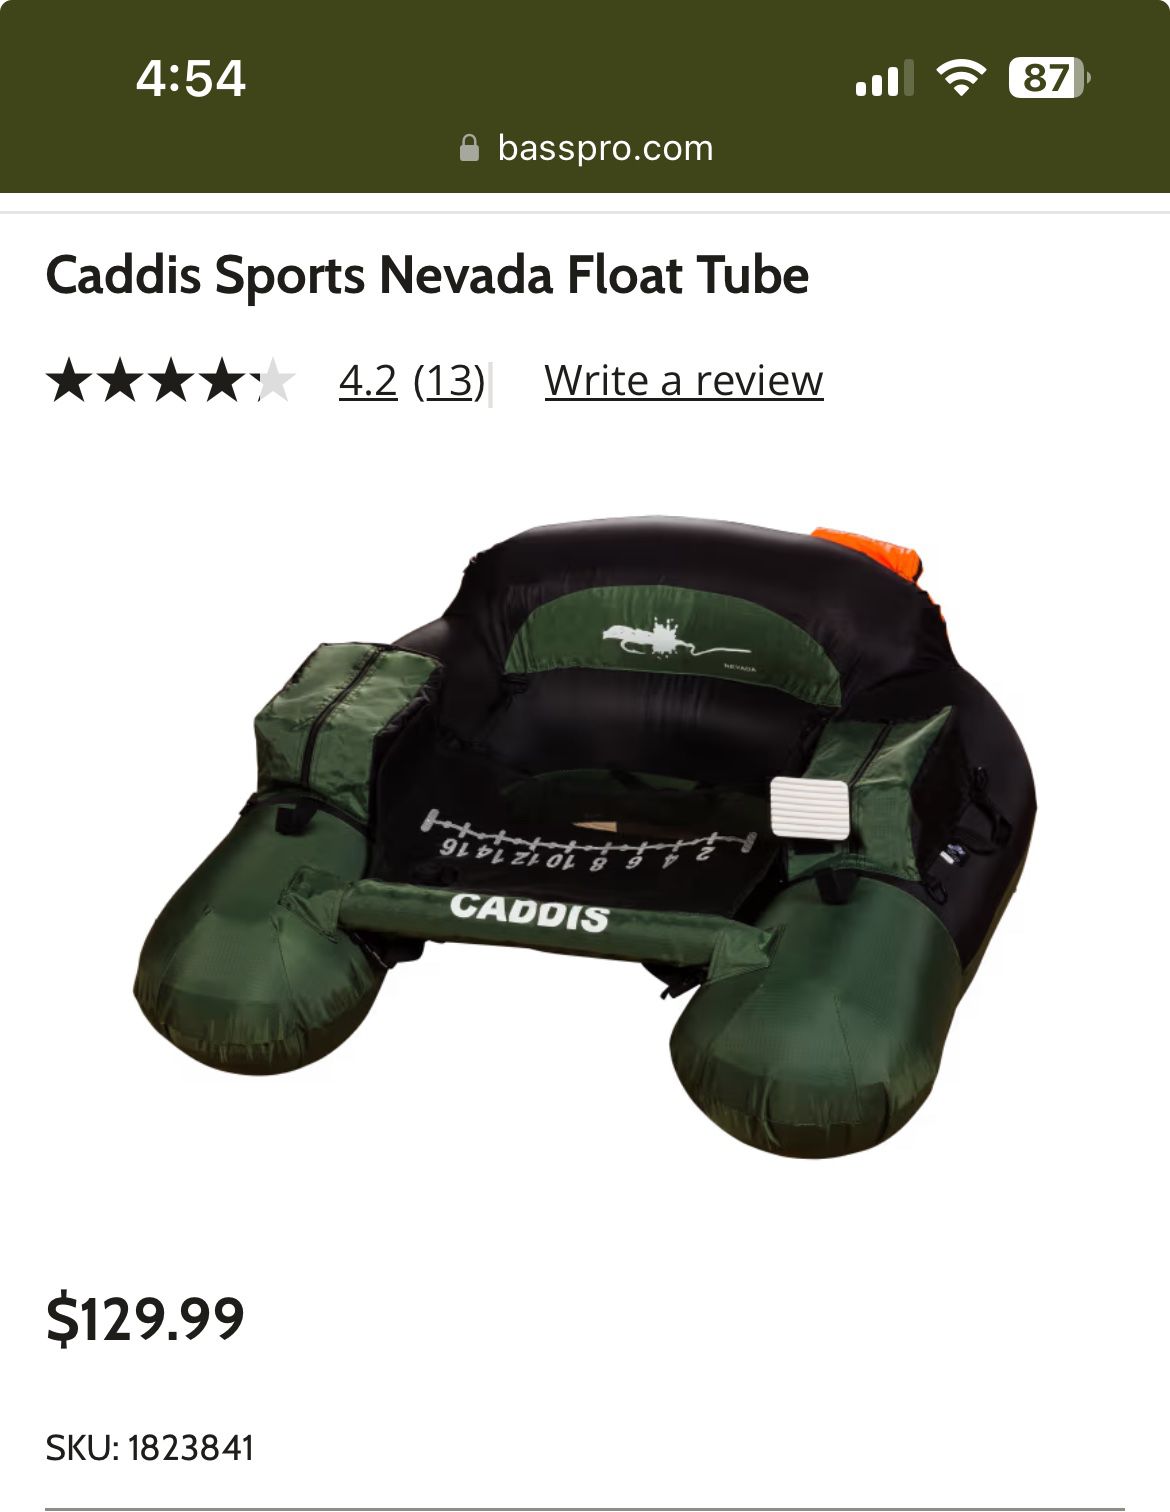 Caddis Sports Nevada Fishing Float Tube